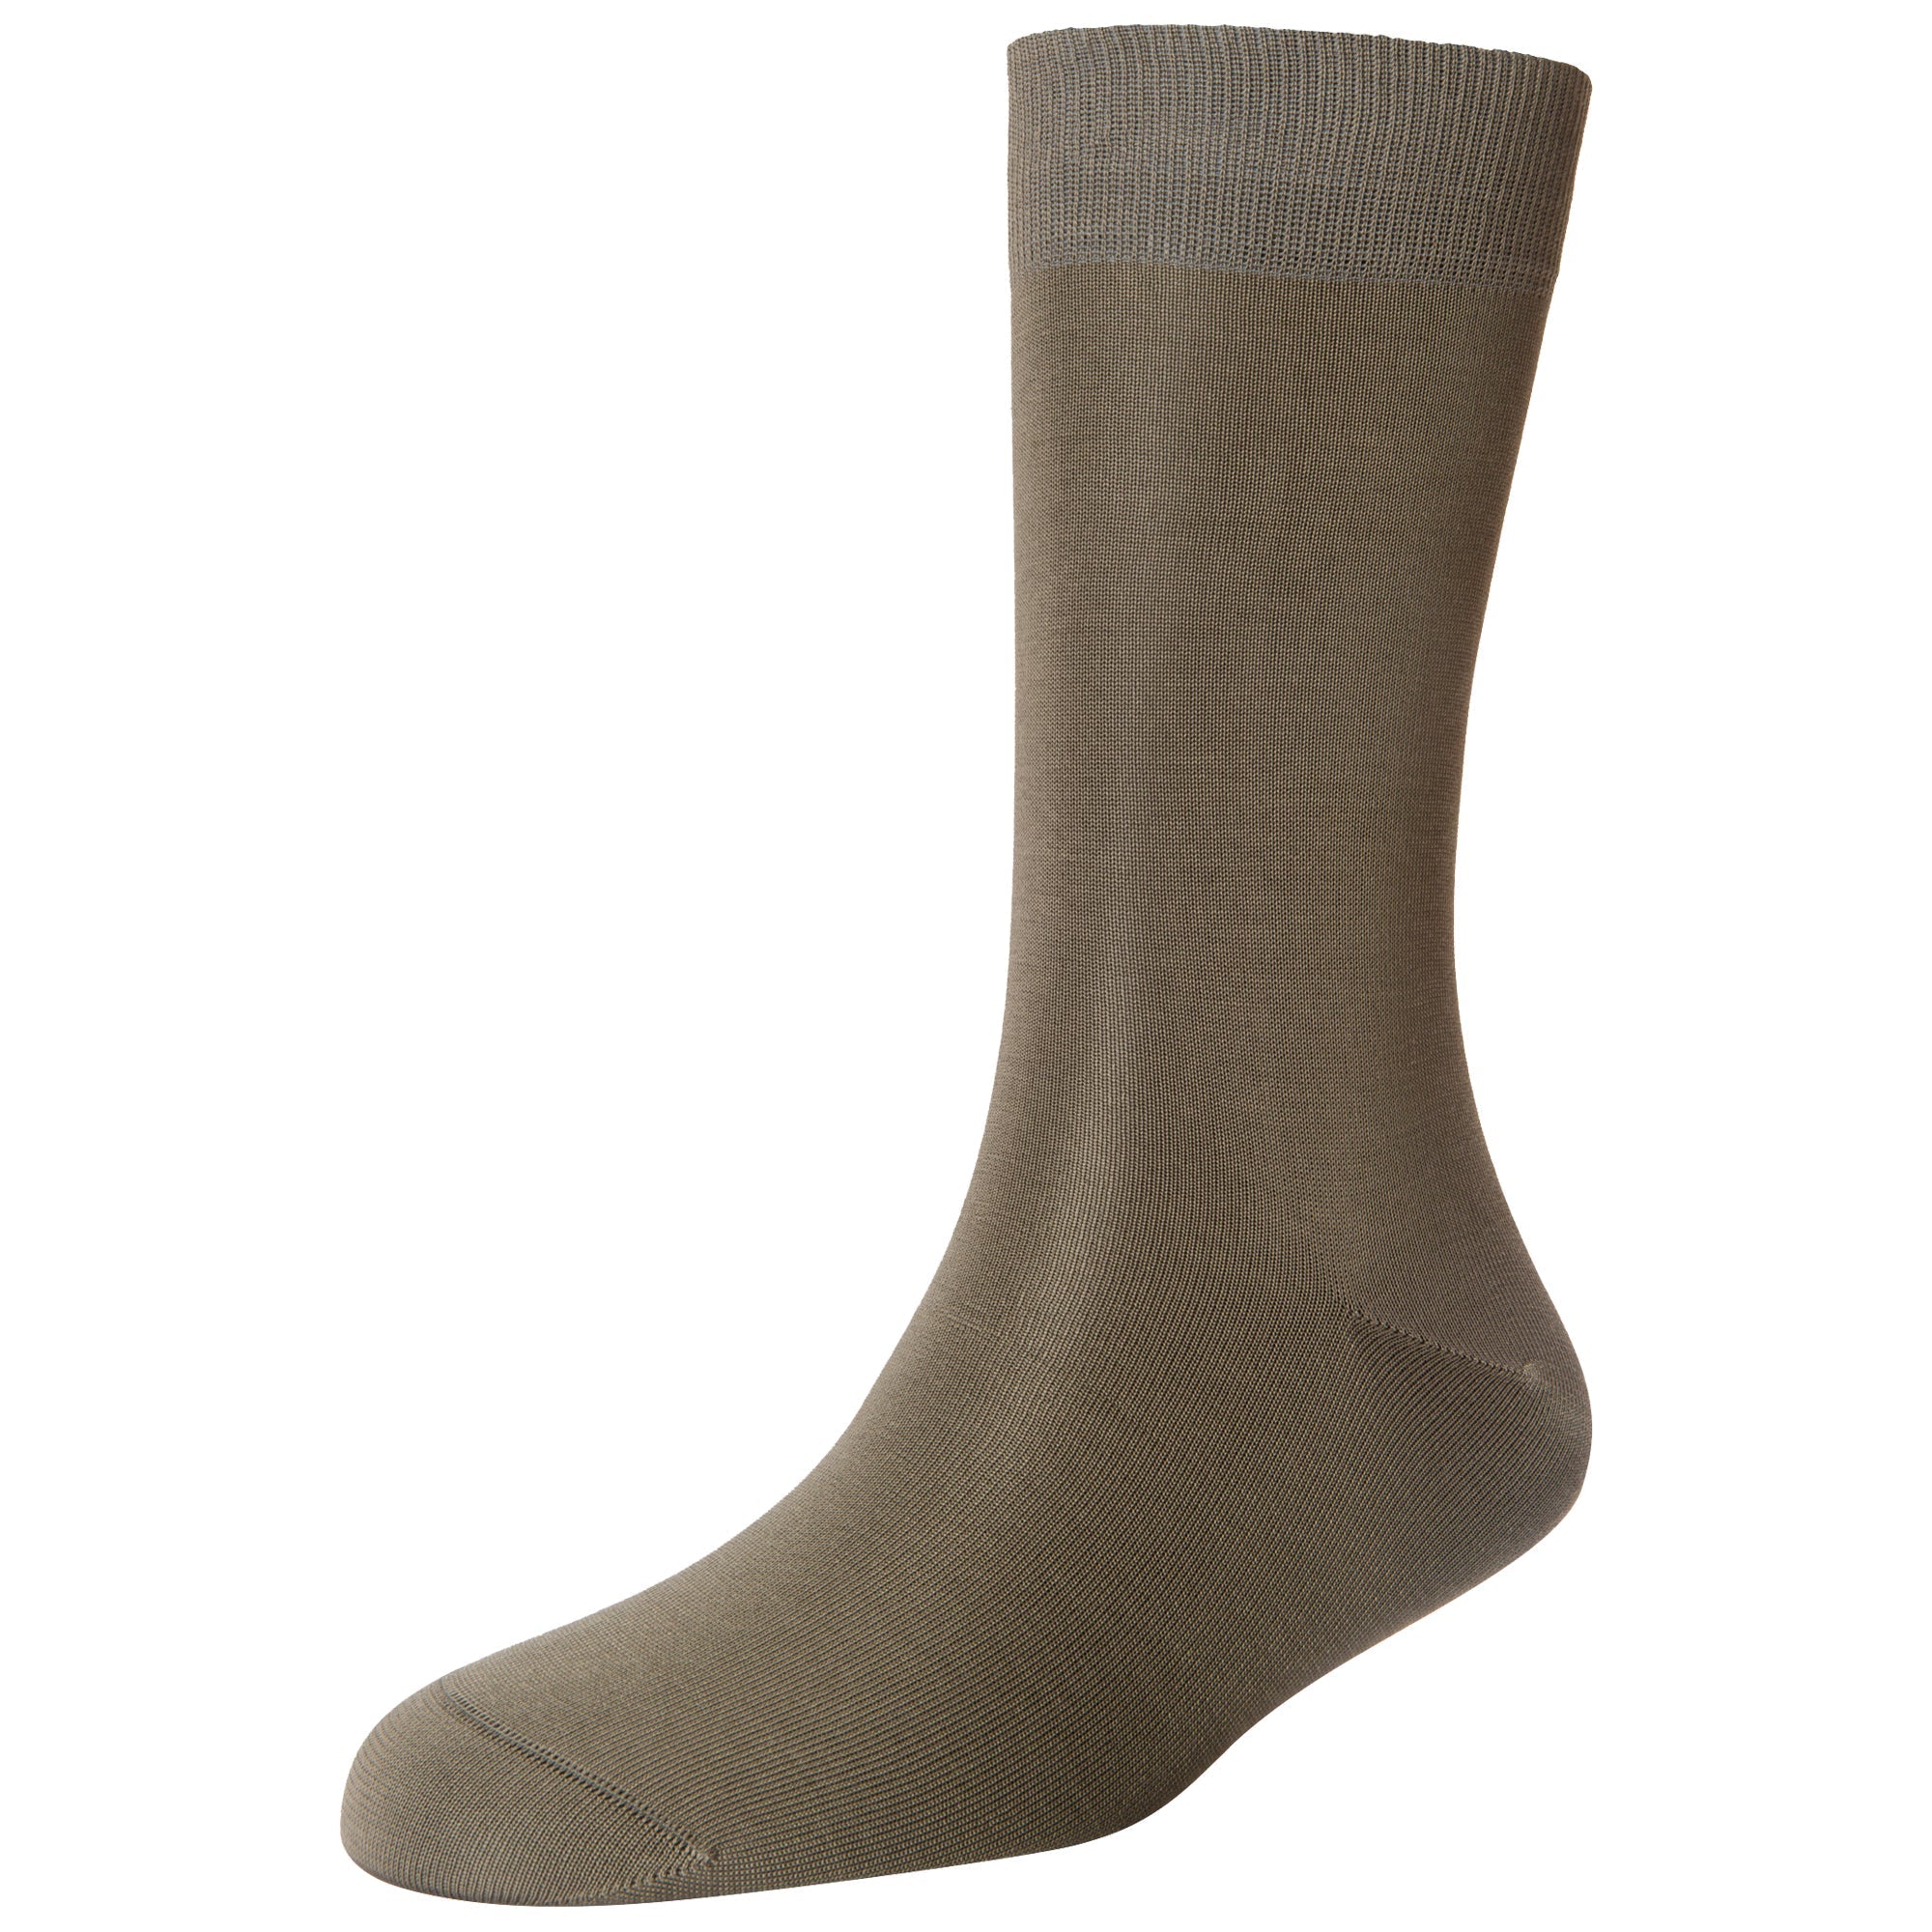 Men's Fine Standard Length Socks